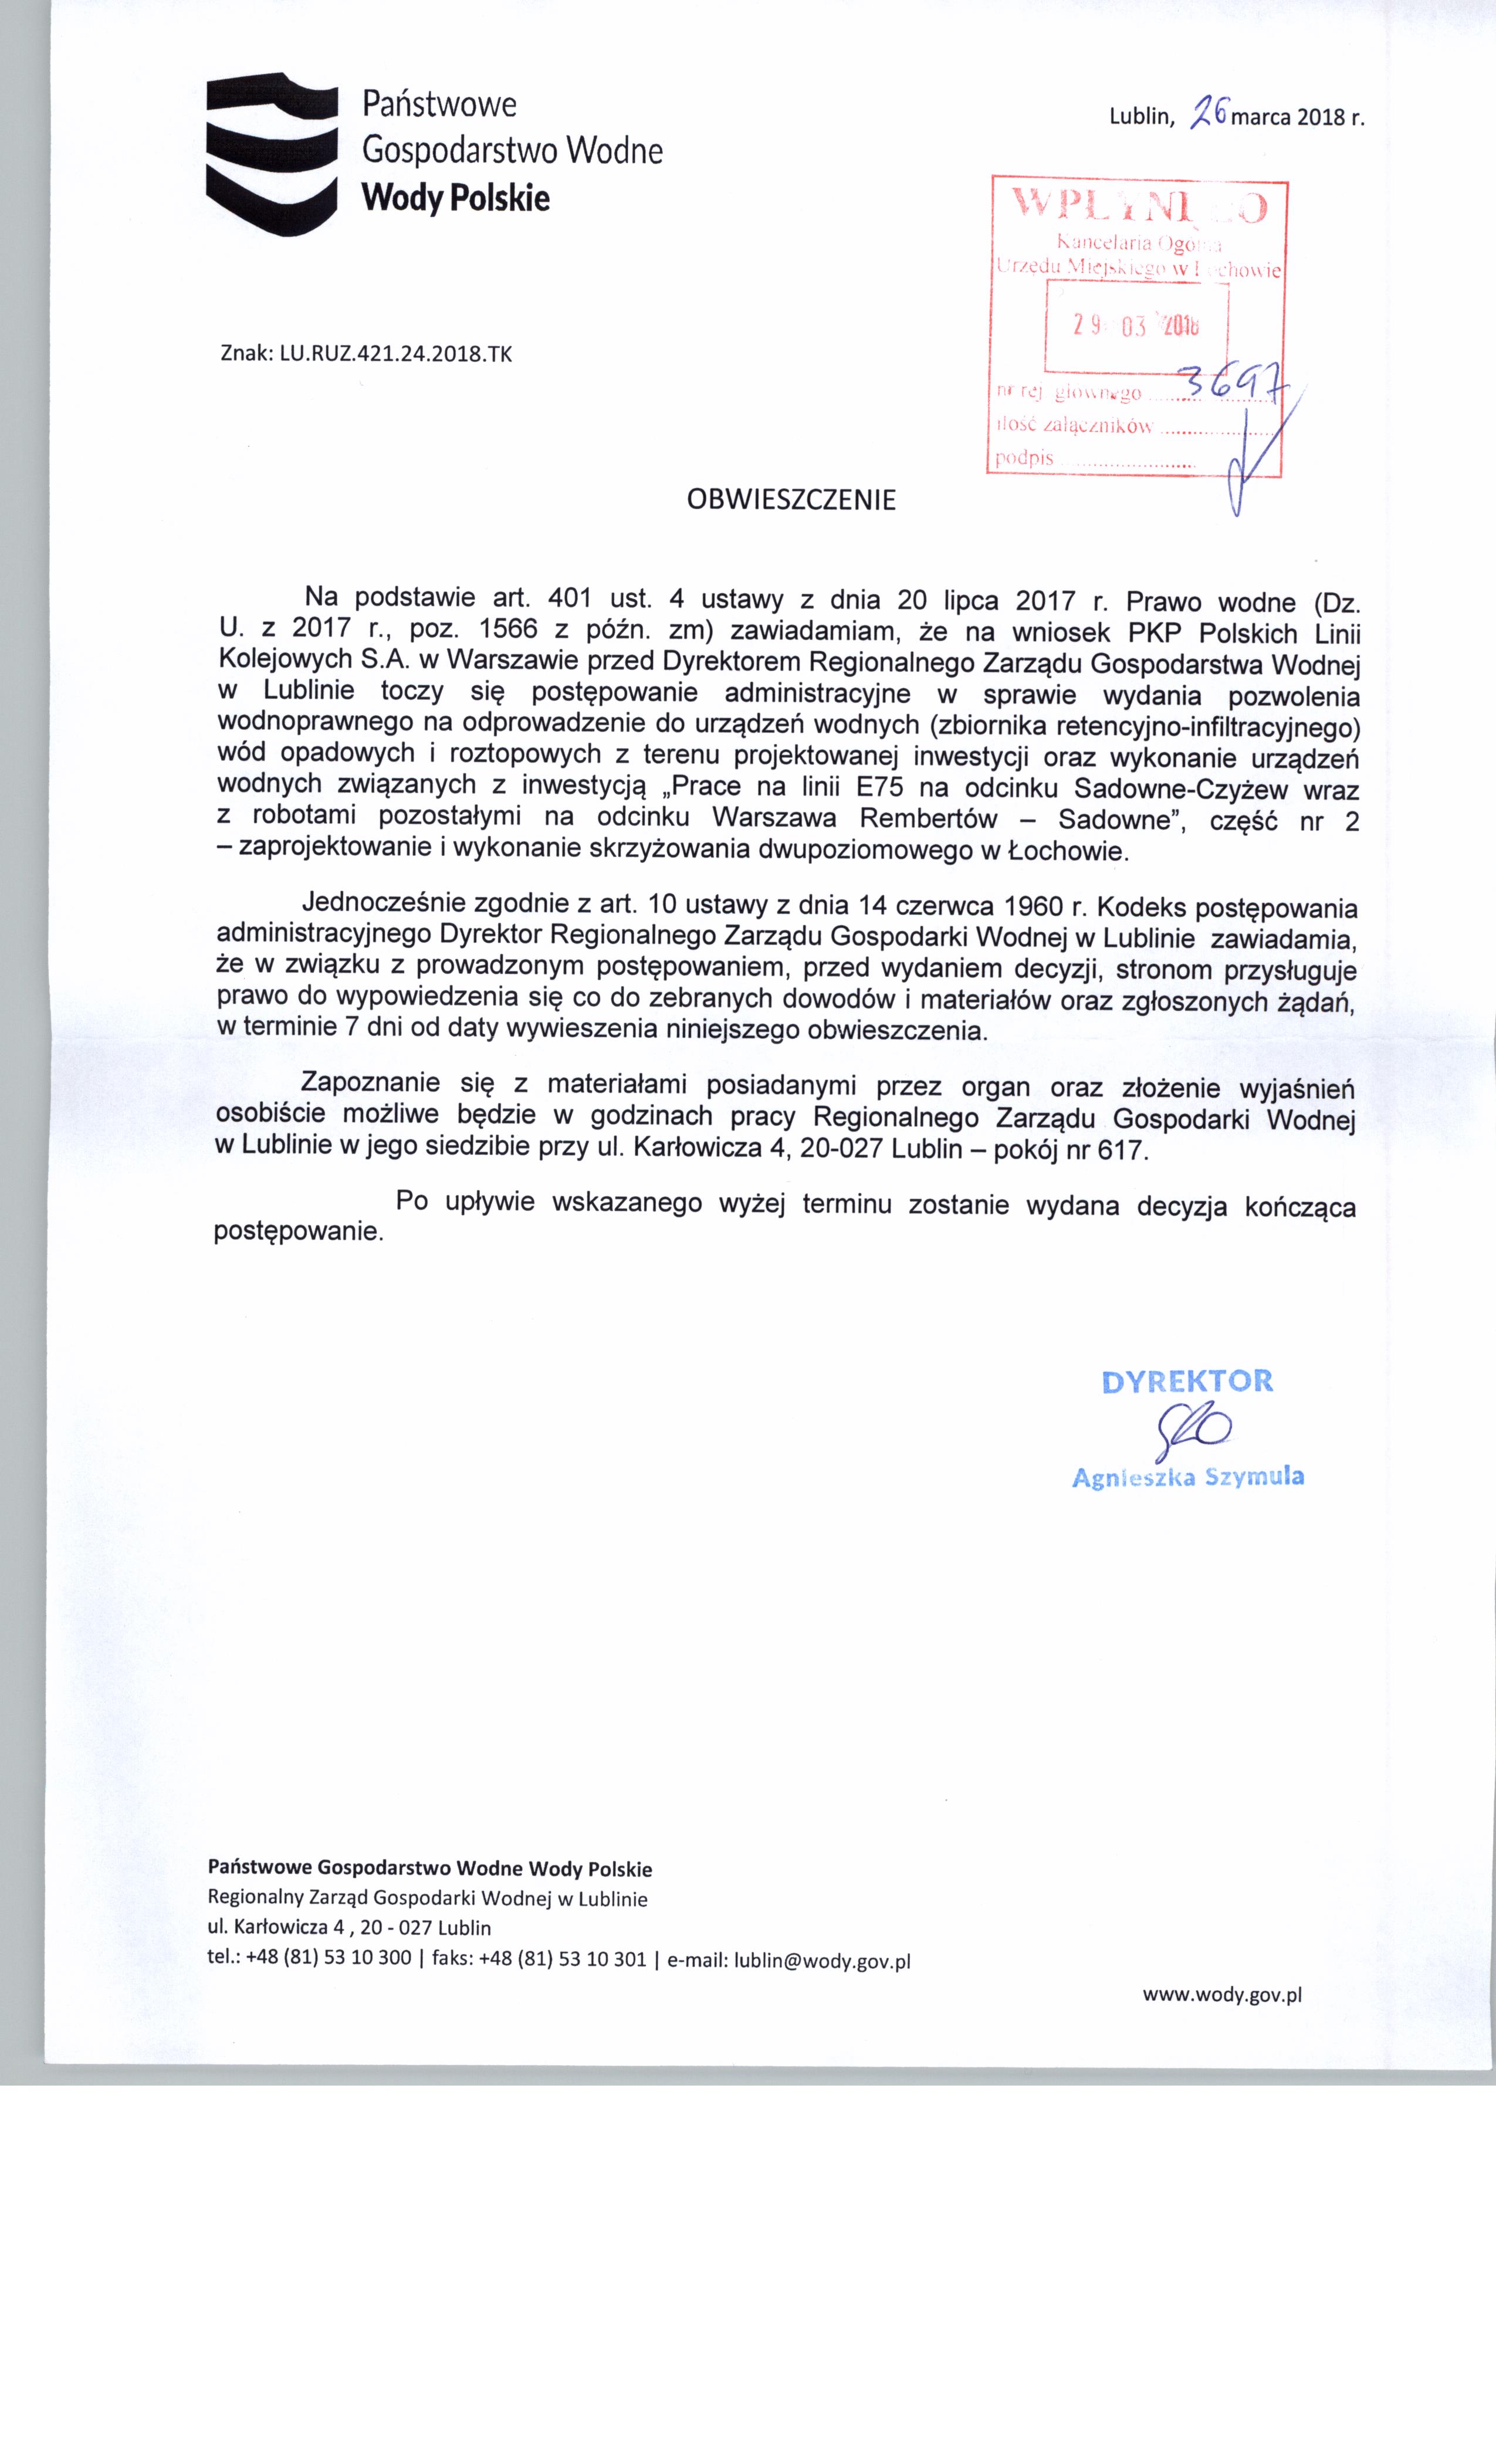 Obwieszczenie Dyrektora Regionalnego Zarządu Gospodarstwa Wodnego o postępowaniu administracyjnym dot. wydania pozwolenia wodnoprawnego